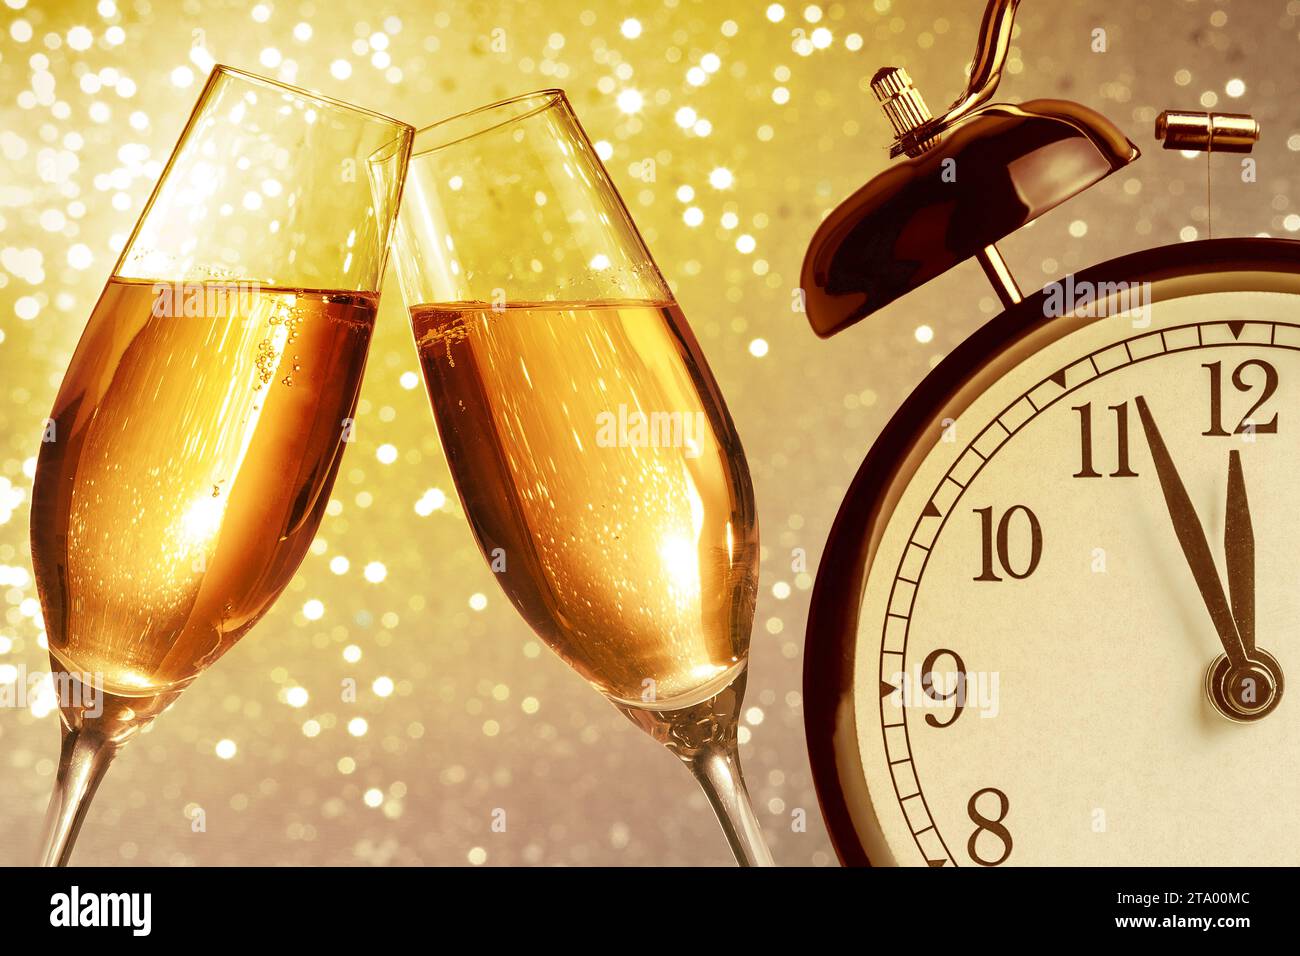 flauti di champagne con bollicine dorate fanno il tifo su sfondo bokeh chiaro dorato con sveglia vintage che mostra il concetto di happy new year a mezzogiorno o mezzanotte Foto Stock